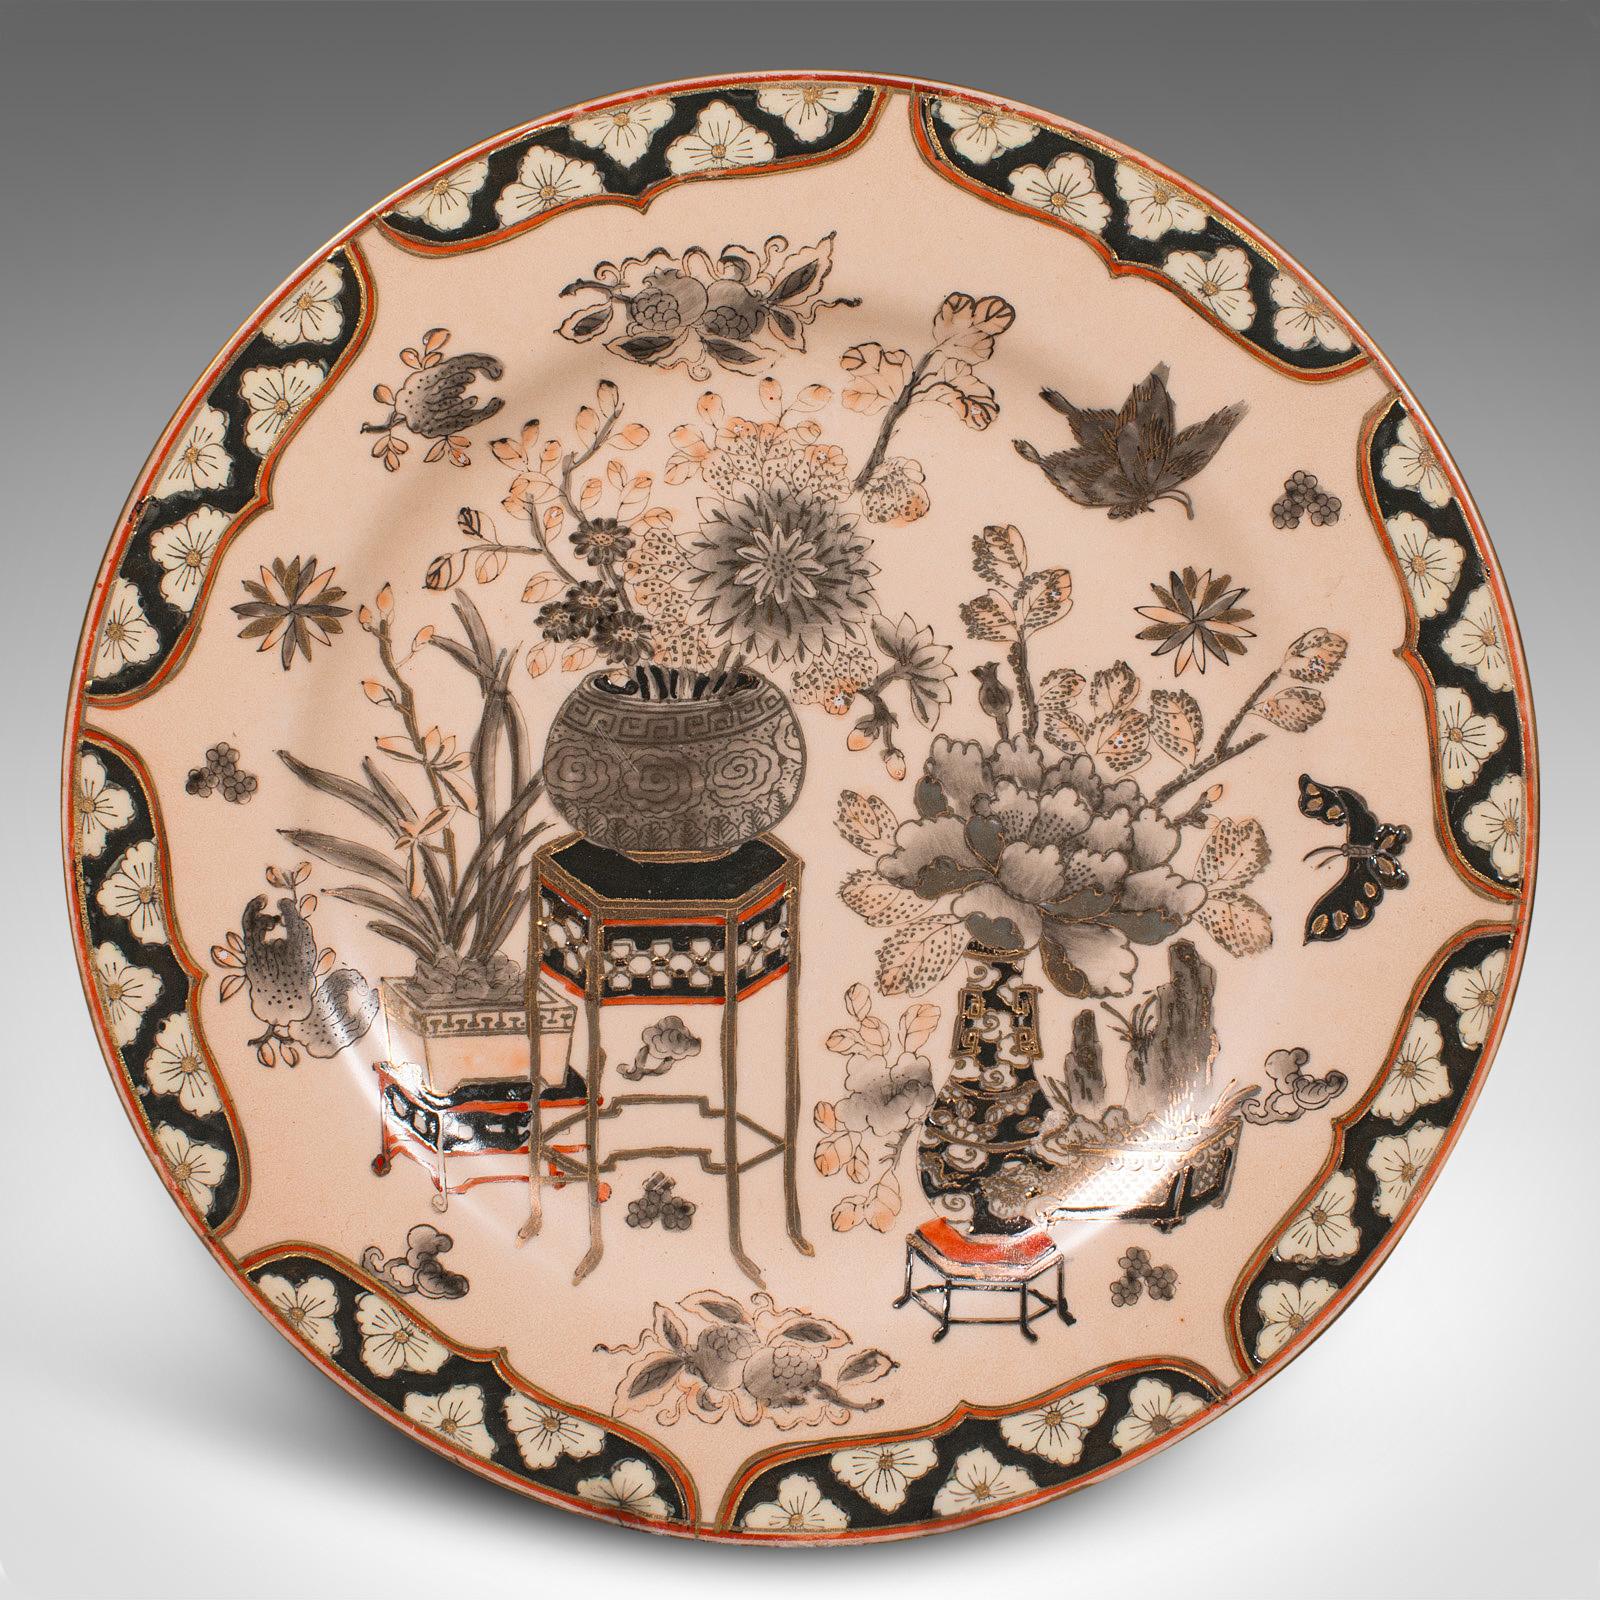 Il s'agit d'un chargeur décoratif vintage. Assiette de présentation chinoise en céramique, datant de la fin de la période Art déco, vers 1940.

Fascinante plaque décorative, d'aspect oriental traditionnel
Présente une patine d'usage désirable et est